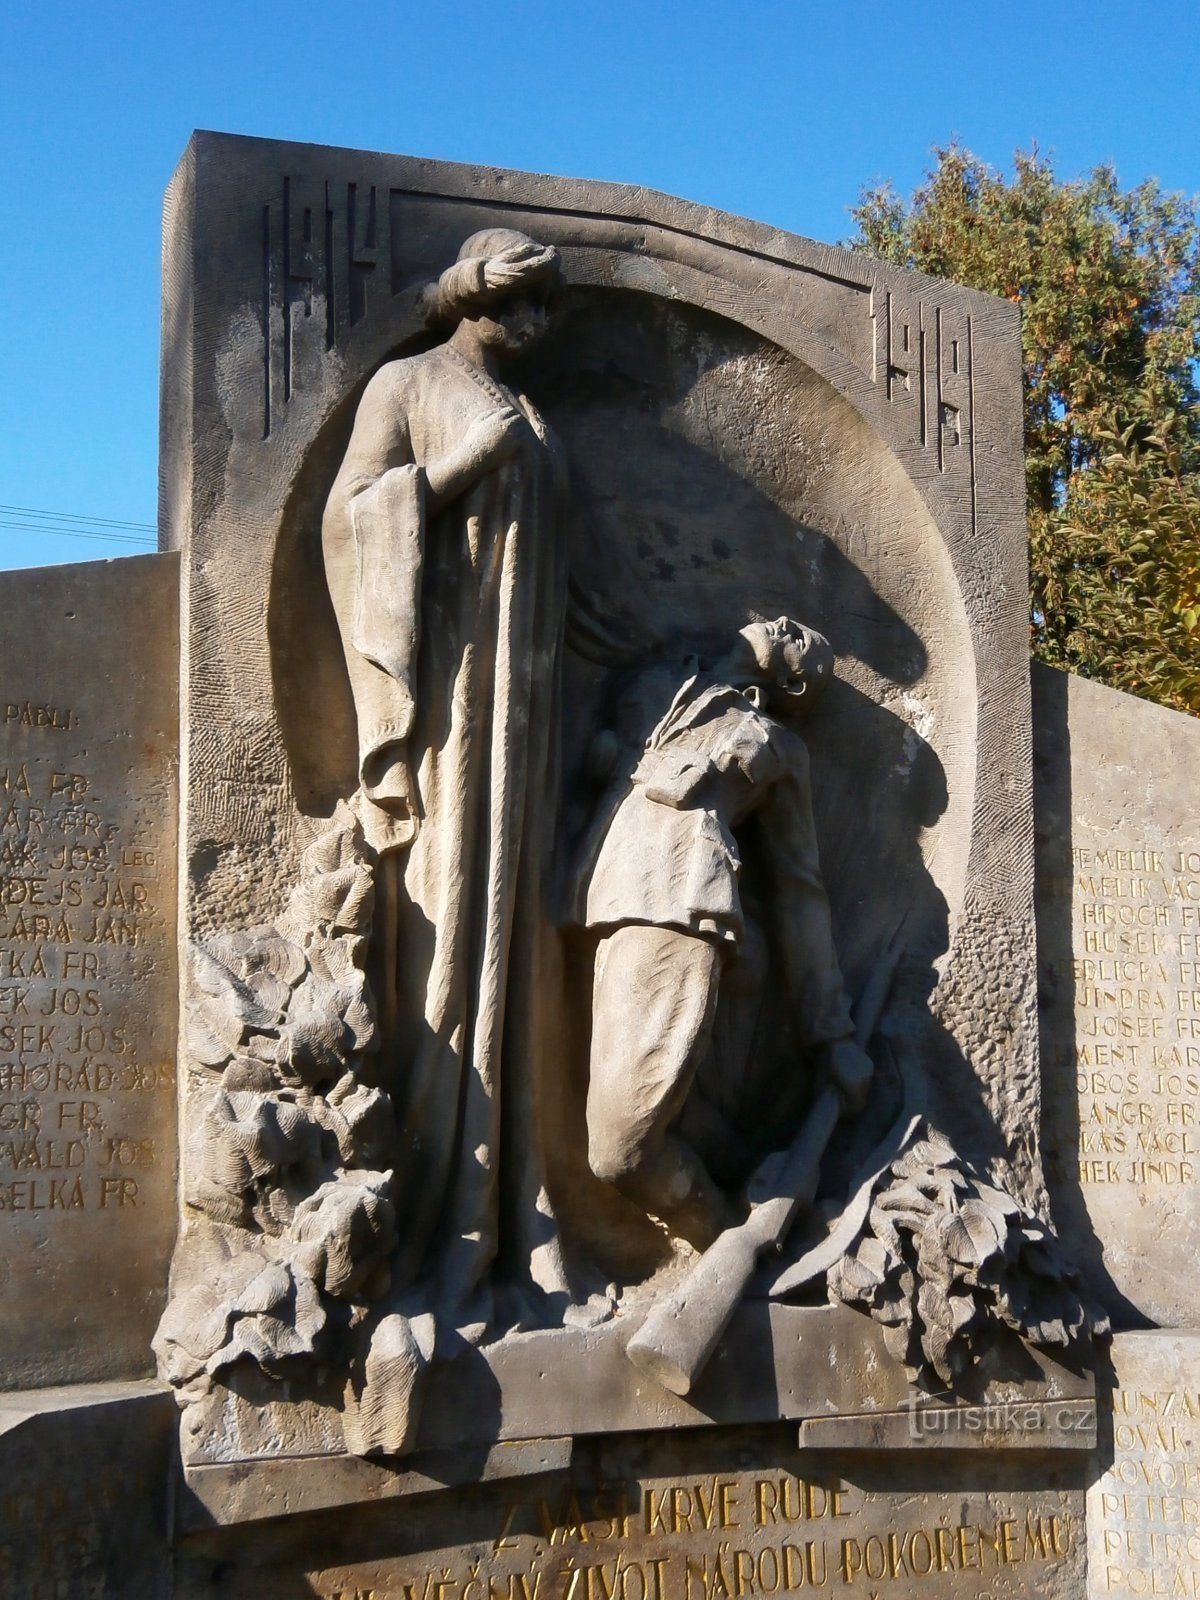 Nové Hradec Králové の第一次世界大戦で亡くなった人々の記念碑 (Hradec Králové, 1/7.10.2016/XNUMX)